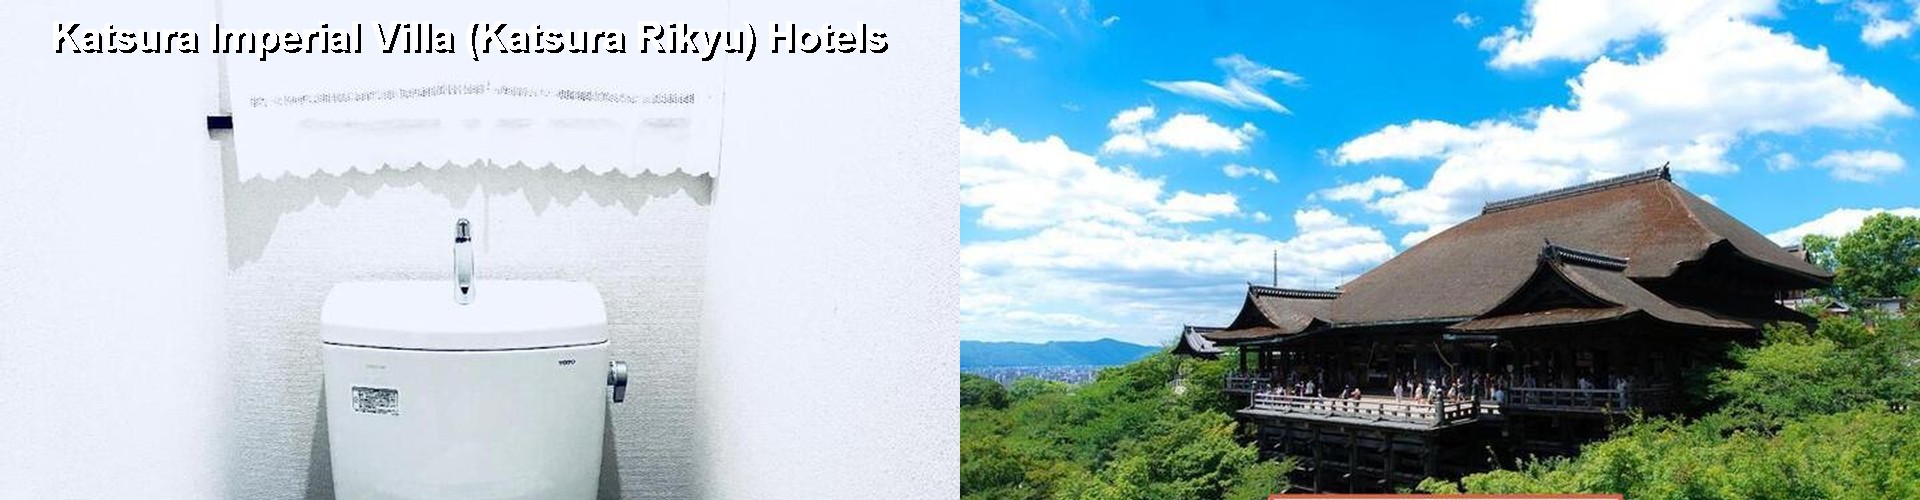 5 Best Hotels near Katsura Imperial Villa (Katsura Rikyu)